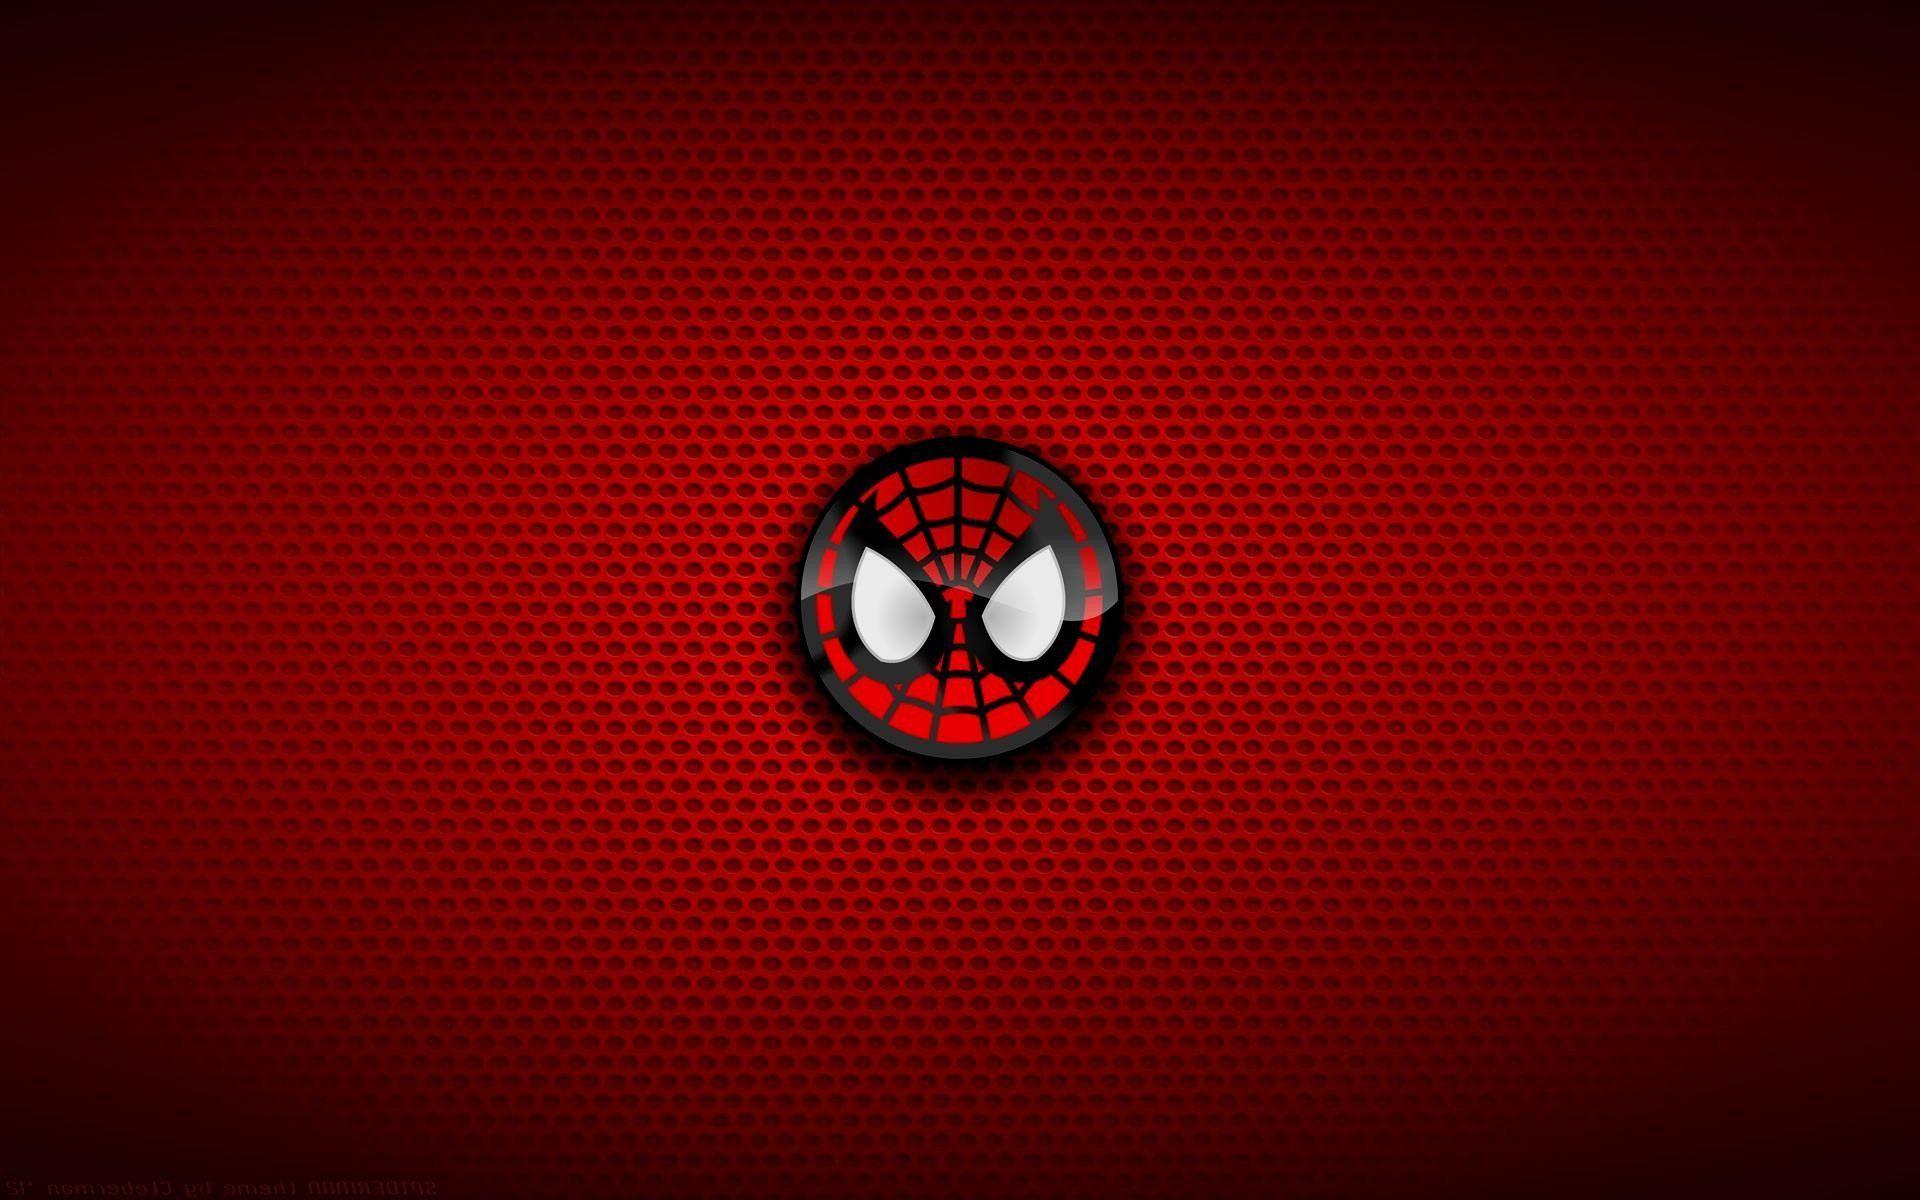 Marvel SpiderMan logo wallpaper simple background SpiderMan 2018   Dark background wallpaper Man logo Spider man 2018